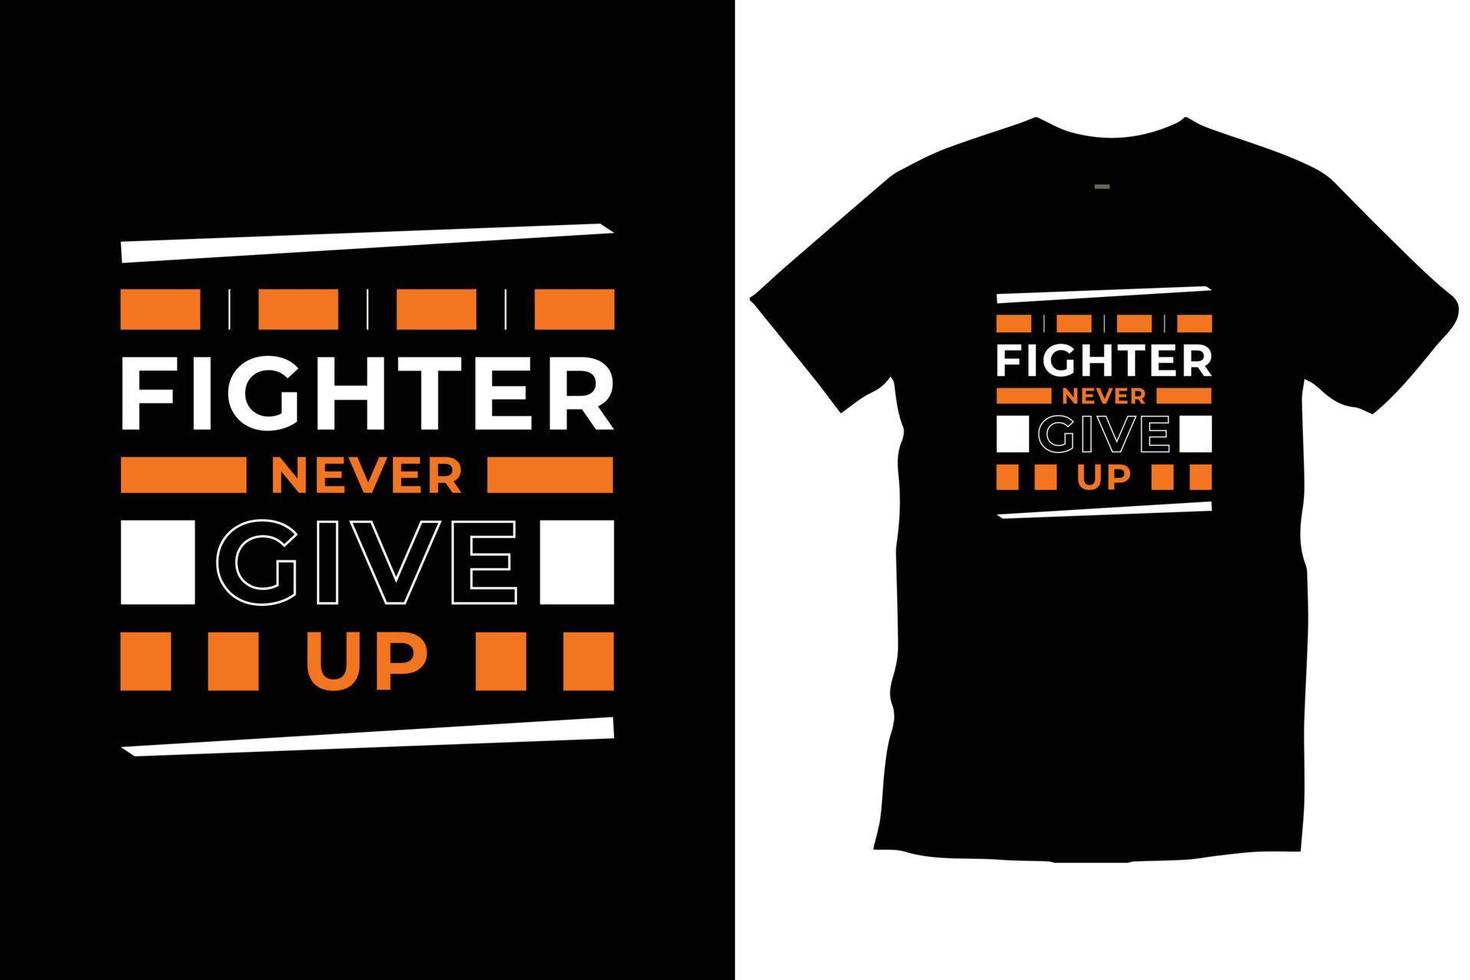 El luchador nunca se rinde. citas modernas motivacionales inspiradoras tipografía fresca vector de diseño de camiseta negra de moda.